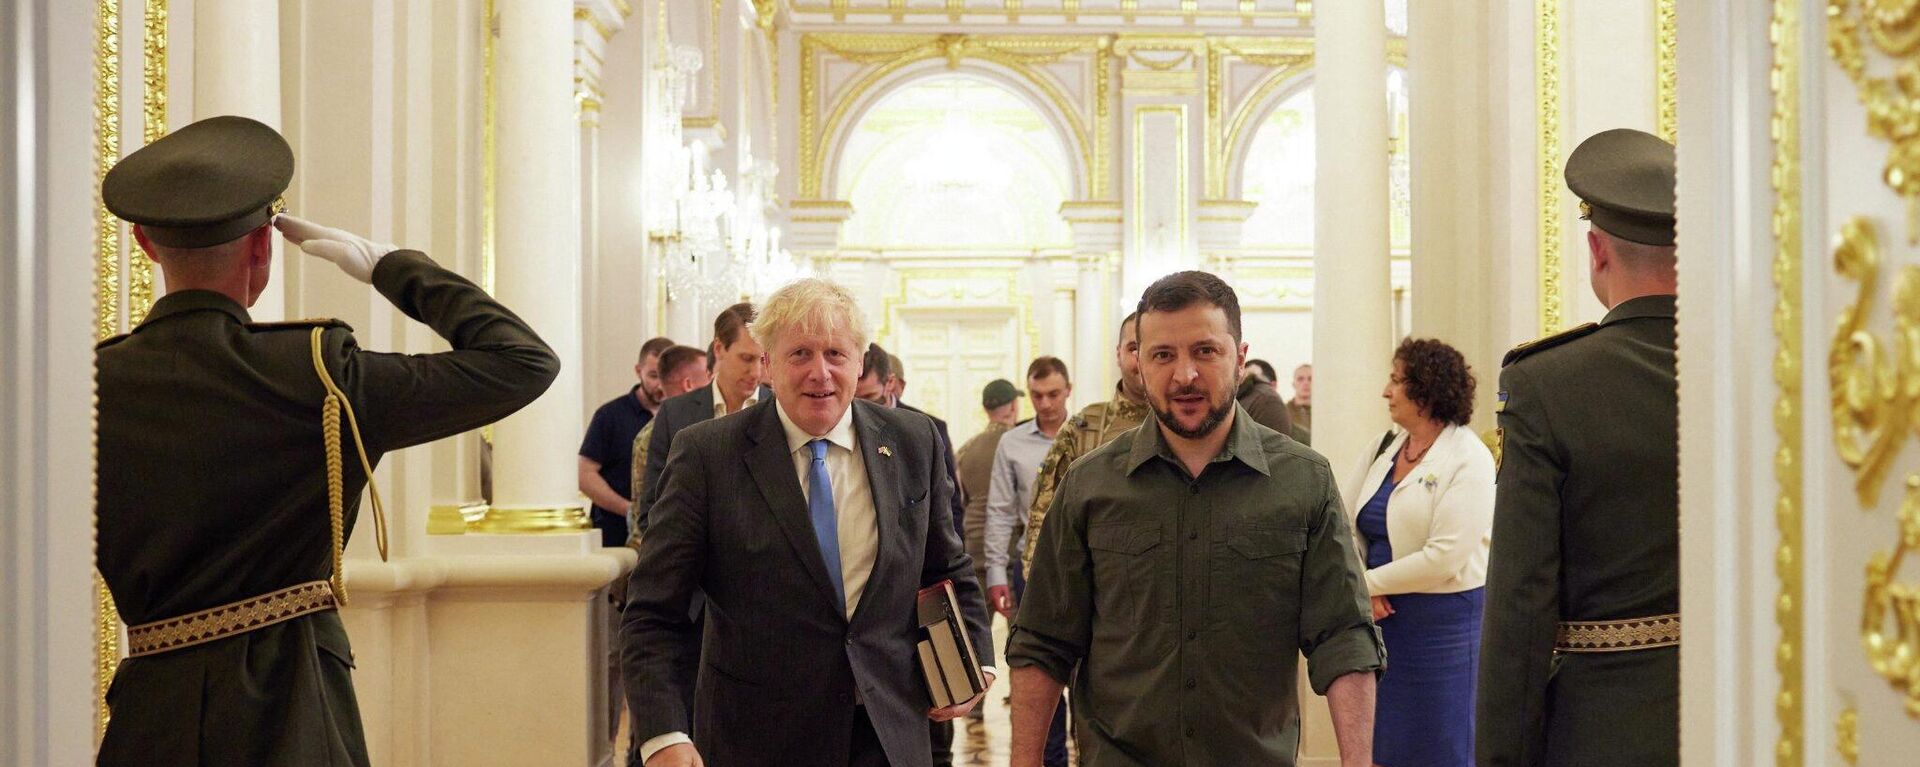 El primer ministro británico, Boris Johnson, y el líder ucraniano, Volodímir Zelenski. - Sputnik Mundo, 1920, 29.06.2022